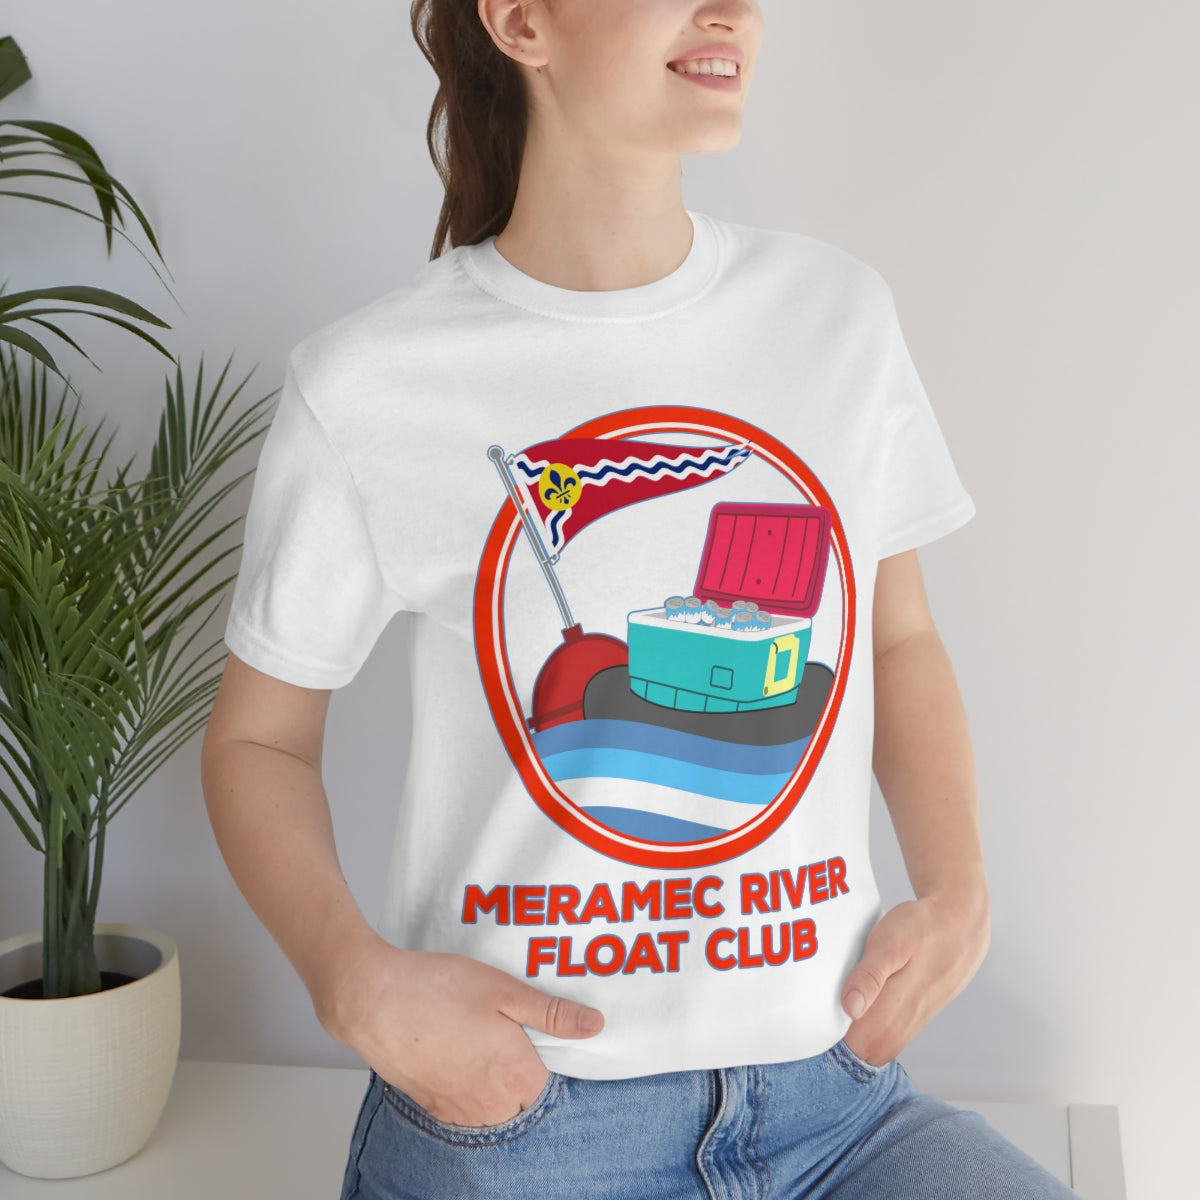 Meramec River Float Club